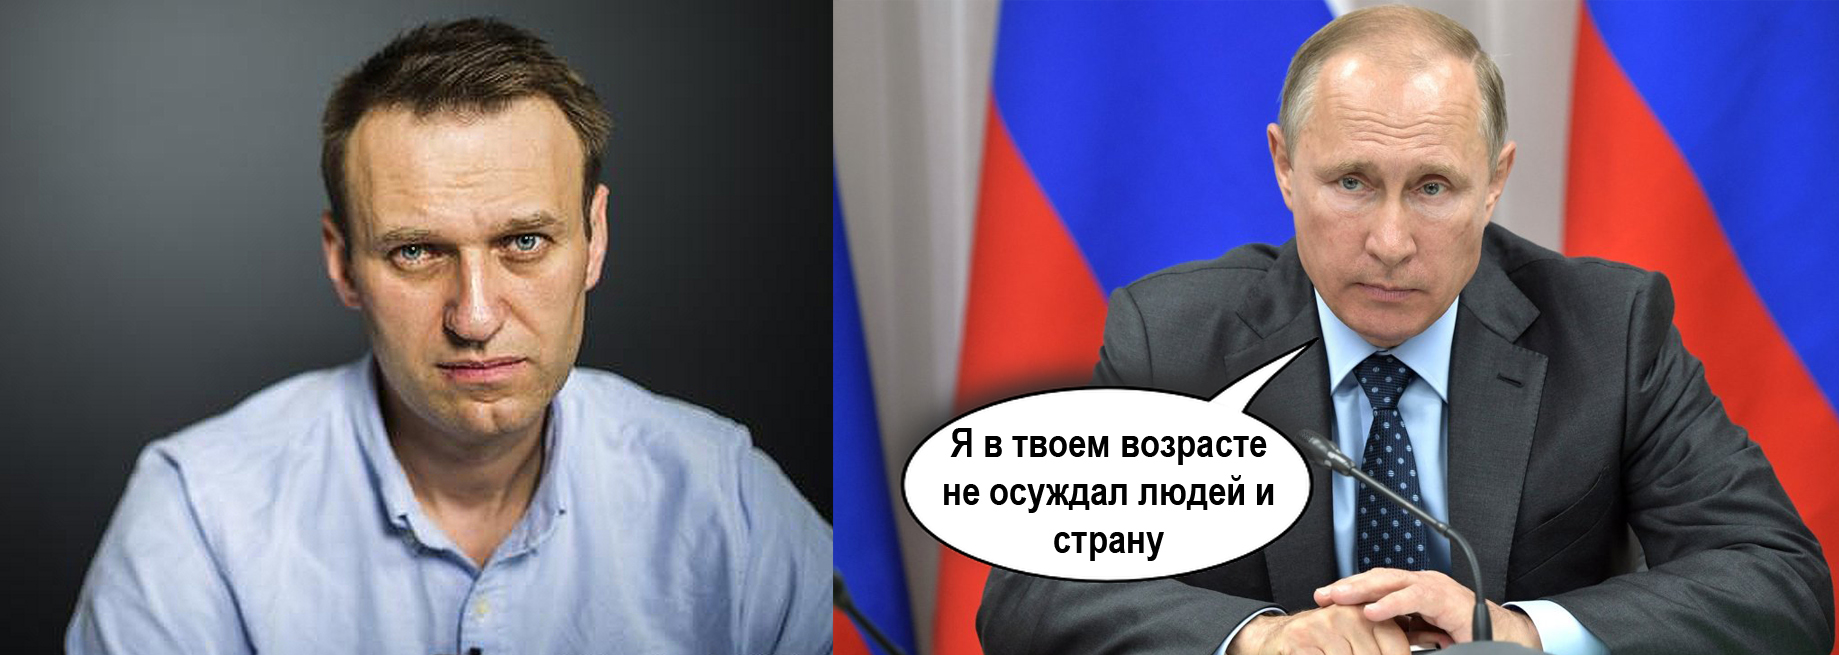 Путин и Навальный: Я в твоем возрасте не осуждал людей и страну.